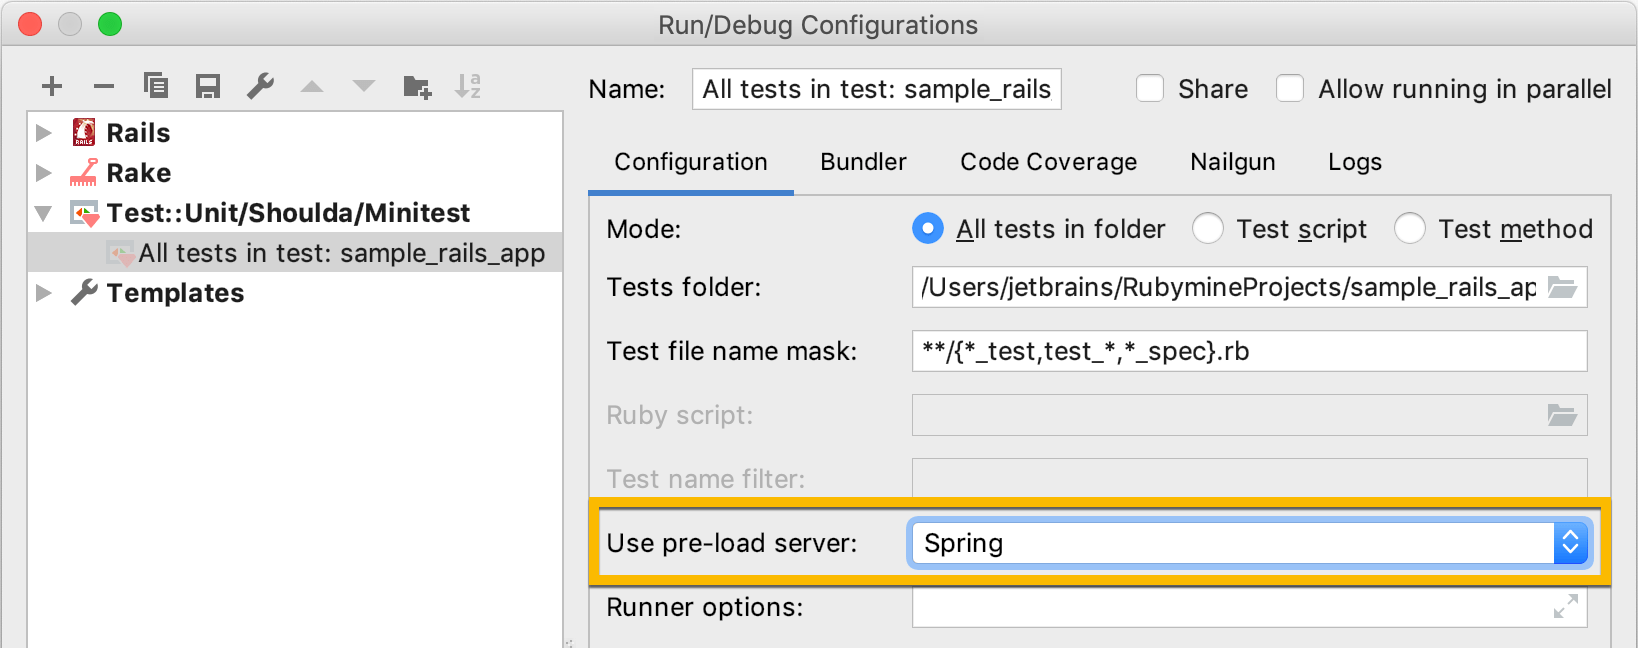 run/debug configurations dialog